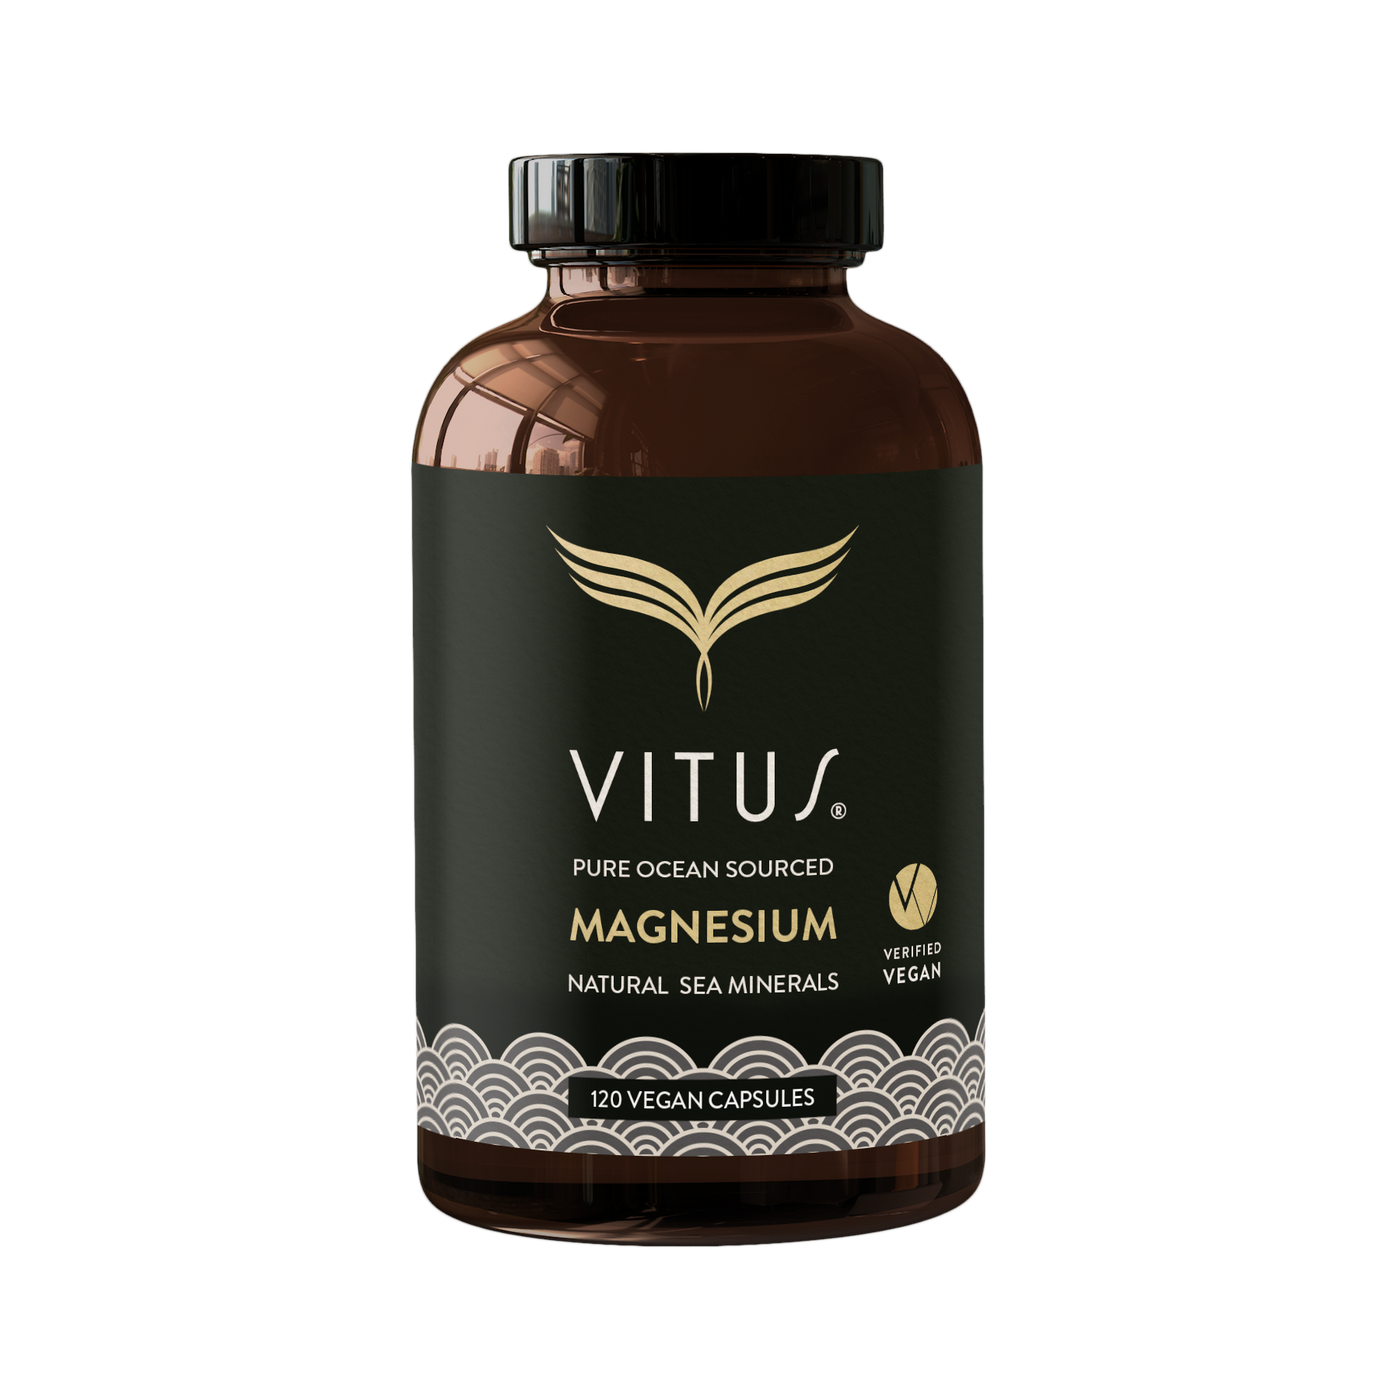 Vitus Magnesium Natural Sea Minerals 120 vegan capsules